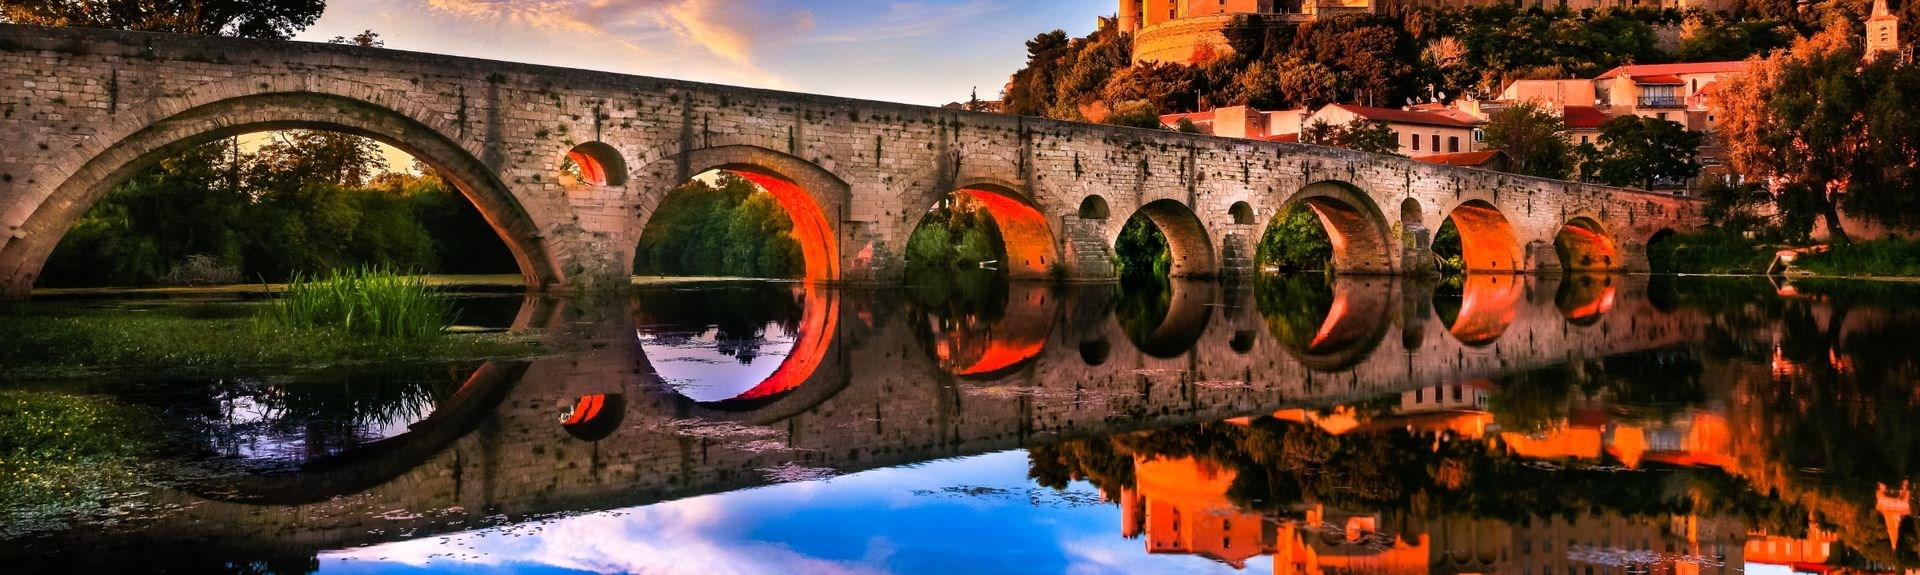 Ciudad de Bziers puente medieval